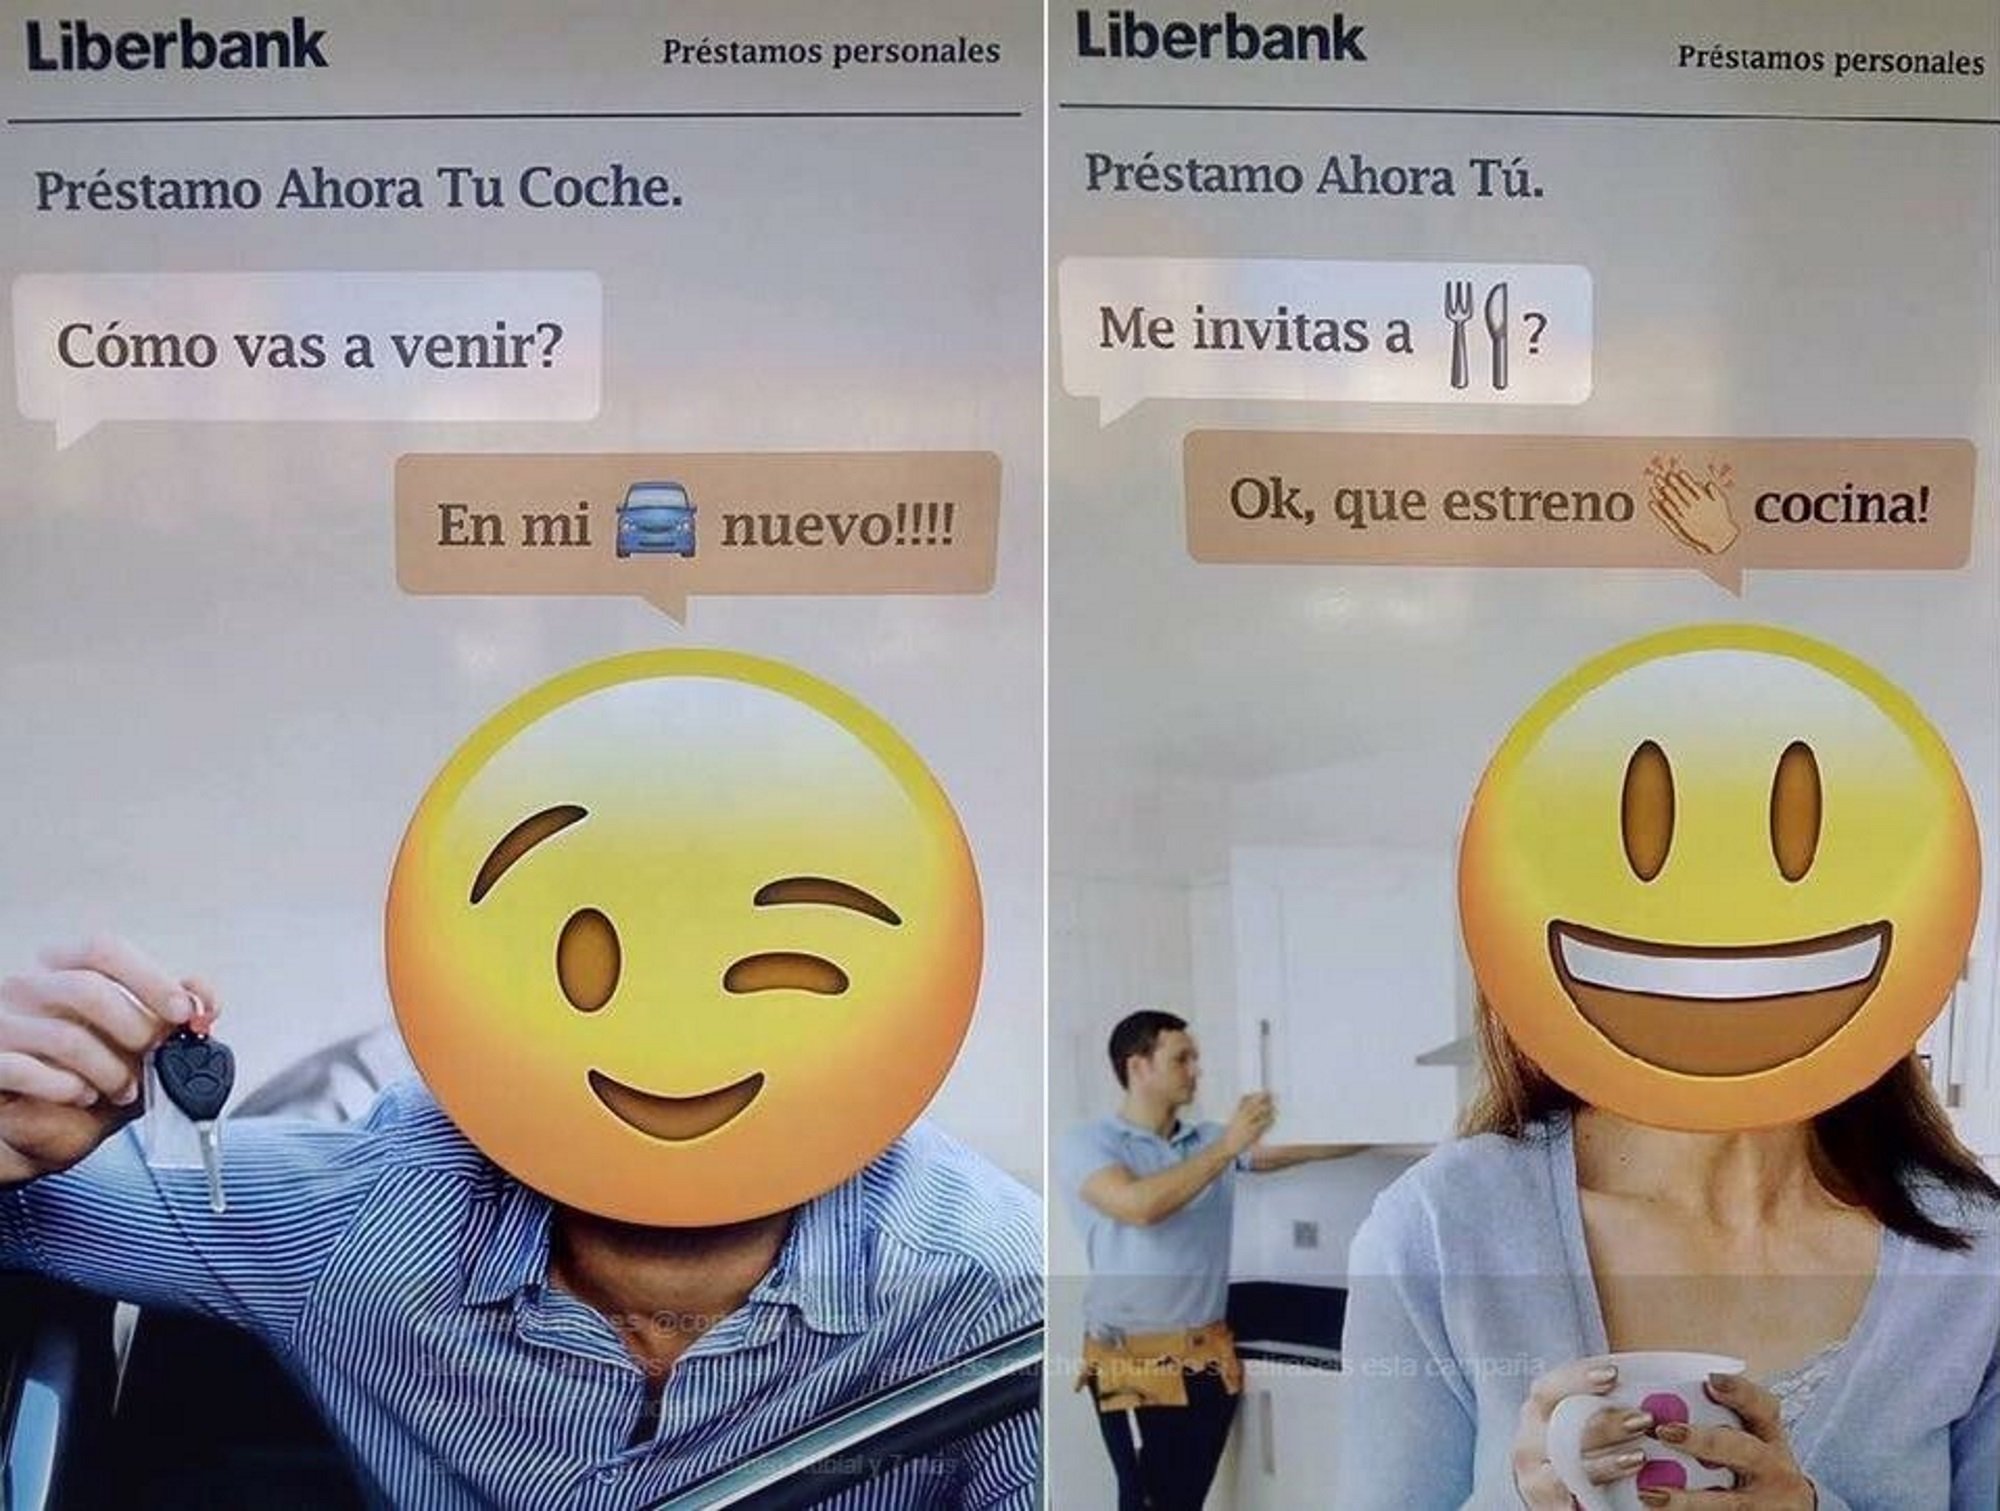 Polèmica per l’anunci sexista de Liberbank